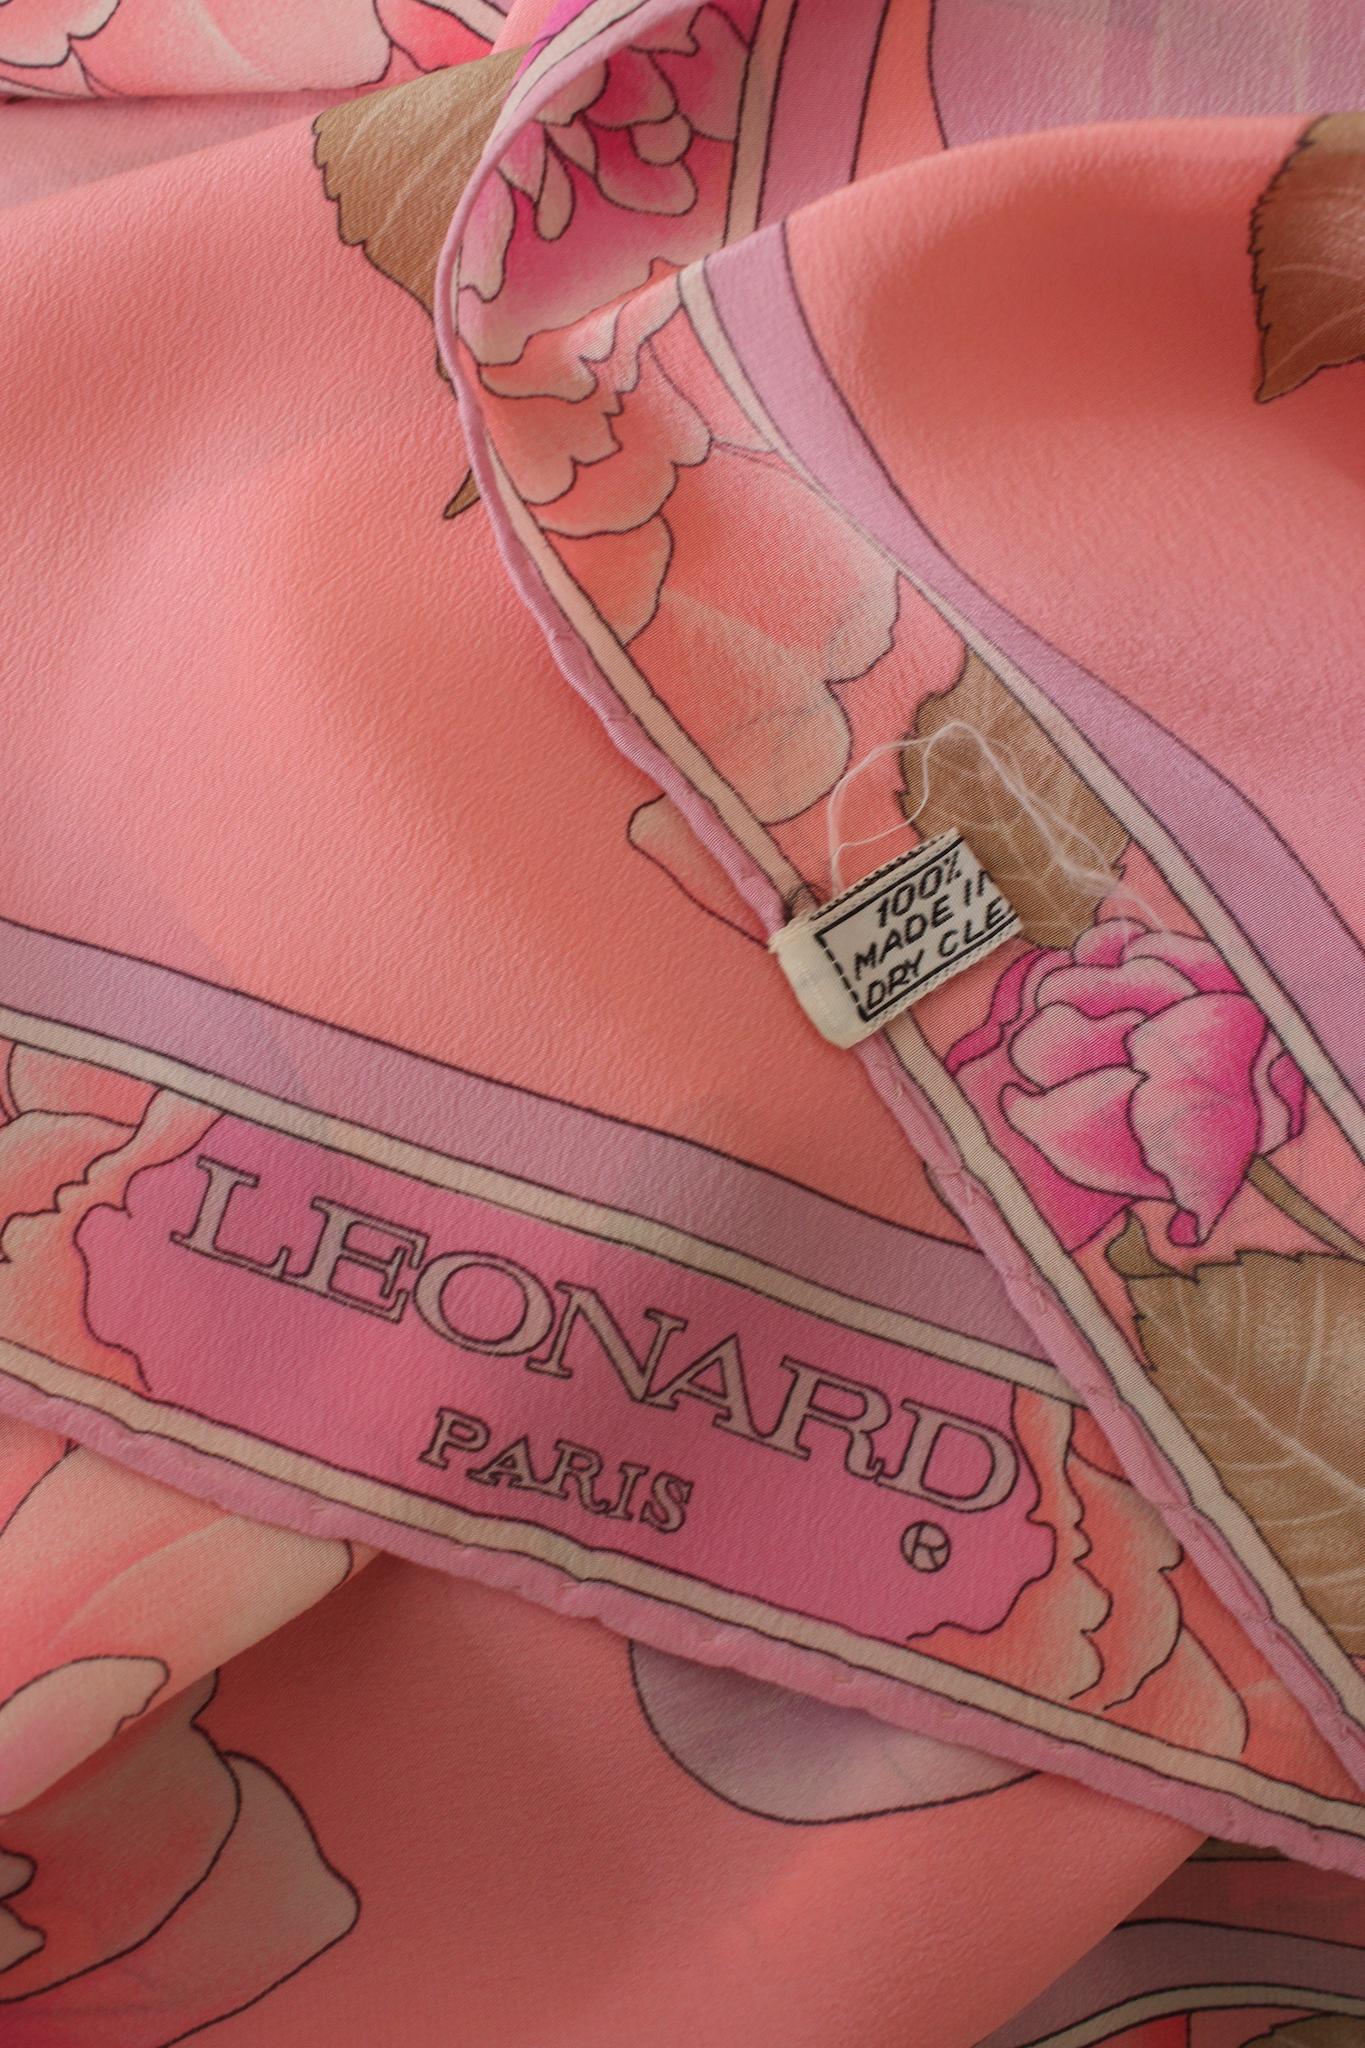 Leonard Paris Schal aus den 80er Jahren. Rechteckiges Modell, rosa Farbe mit lila Blumenmuster. 100% Seide Stoff.

Länge: 180 cm
Höhe: 58 cm